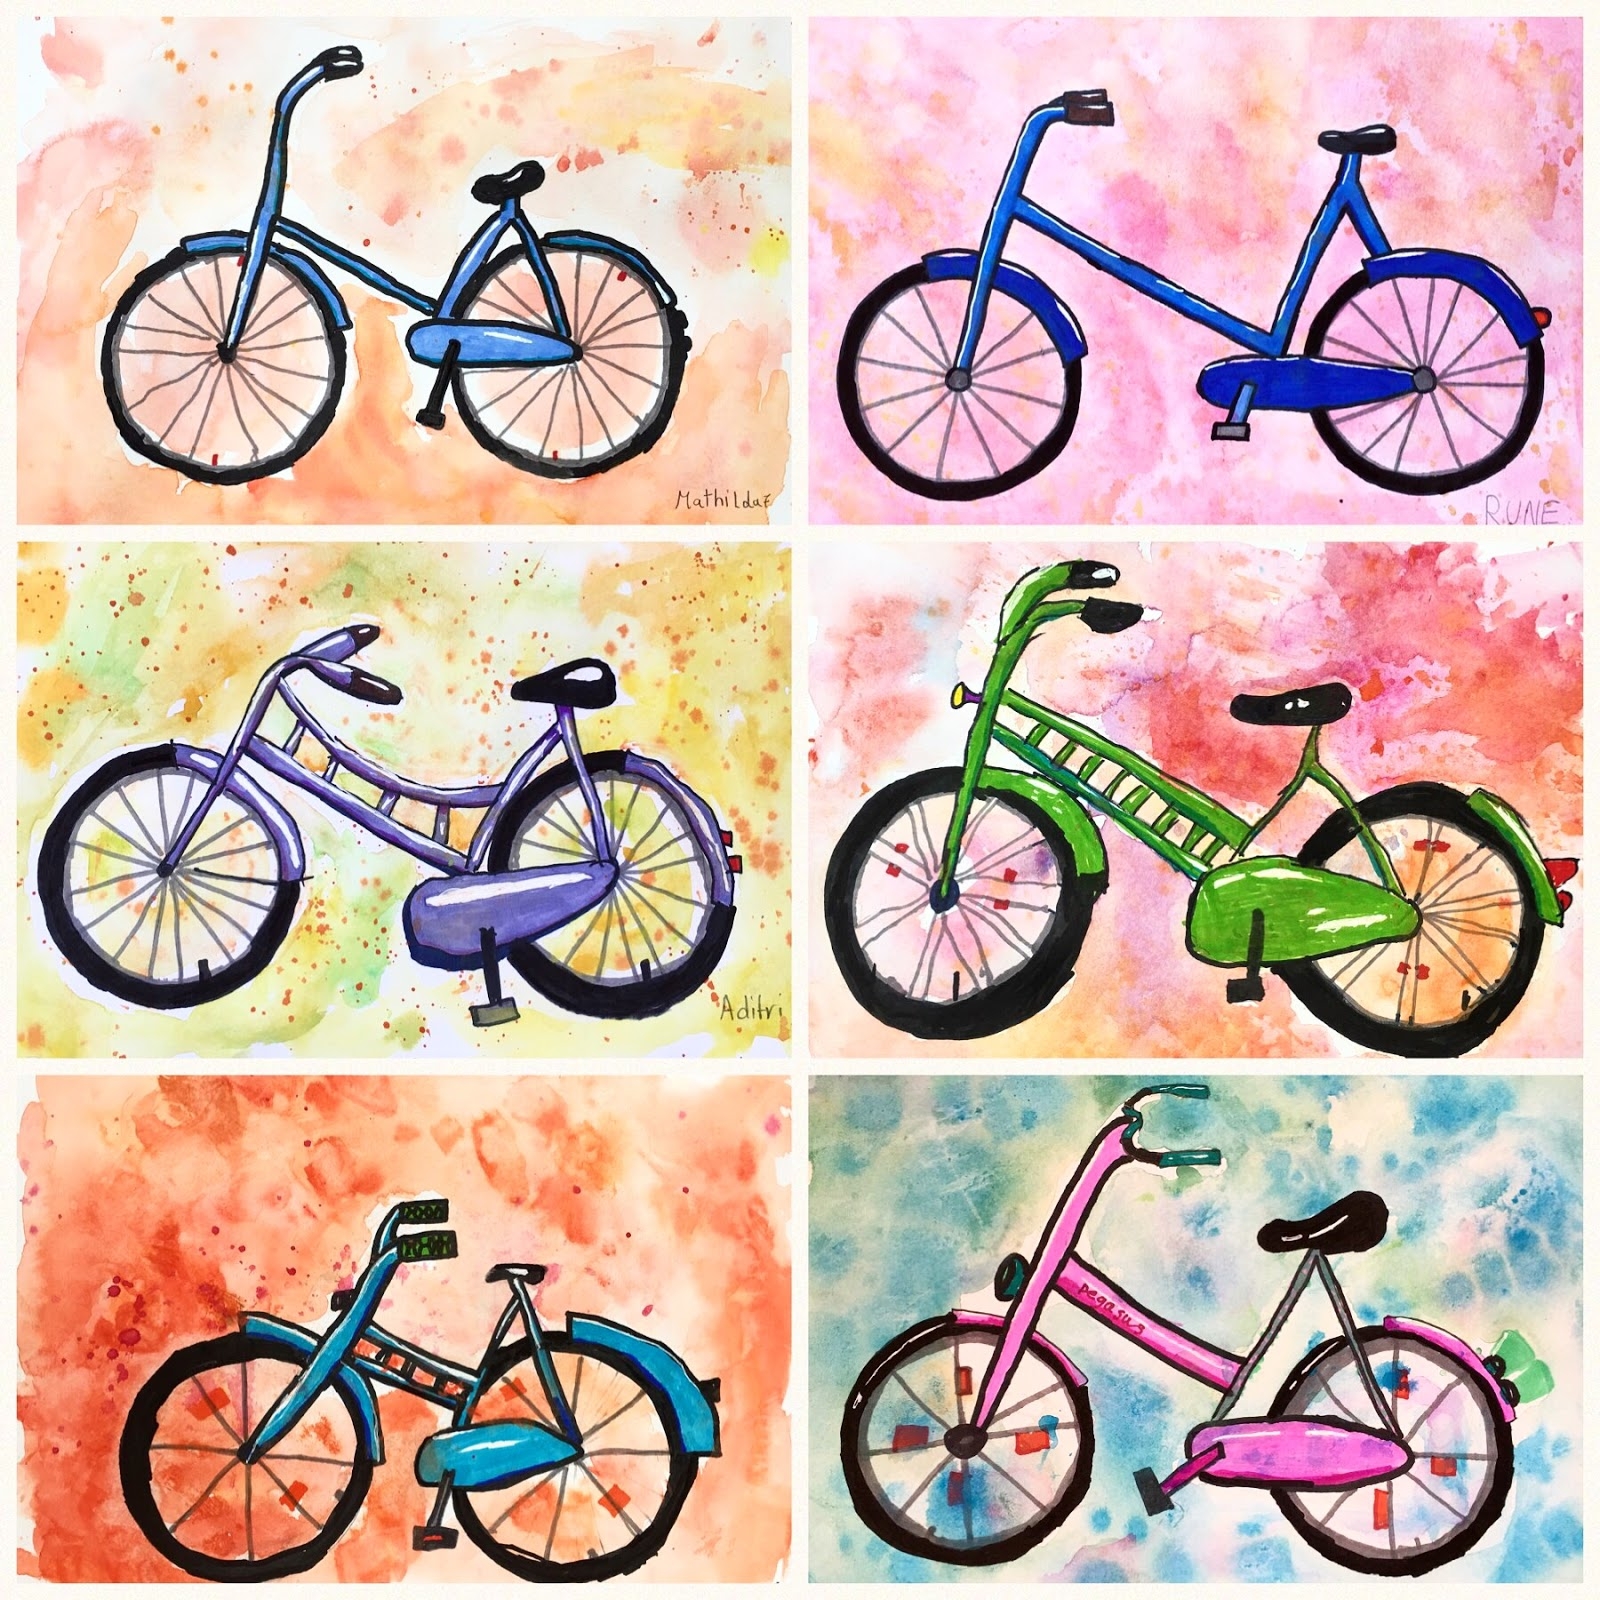 Чехол с рисунком велосипеда